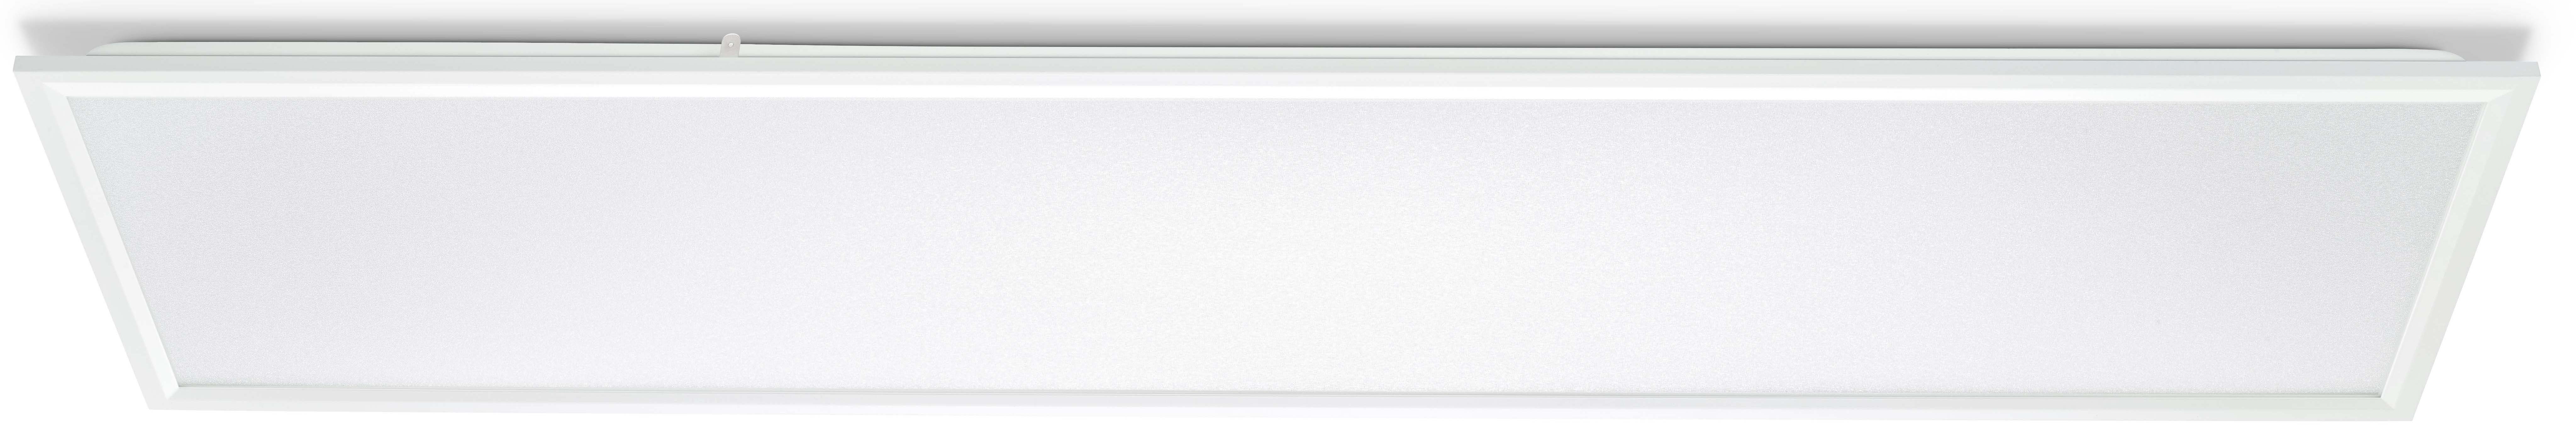 Philips Lighting LED-Panel 840 RC132V G5 #95007800